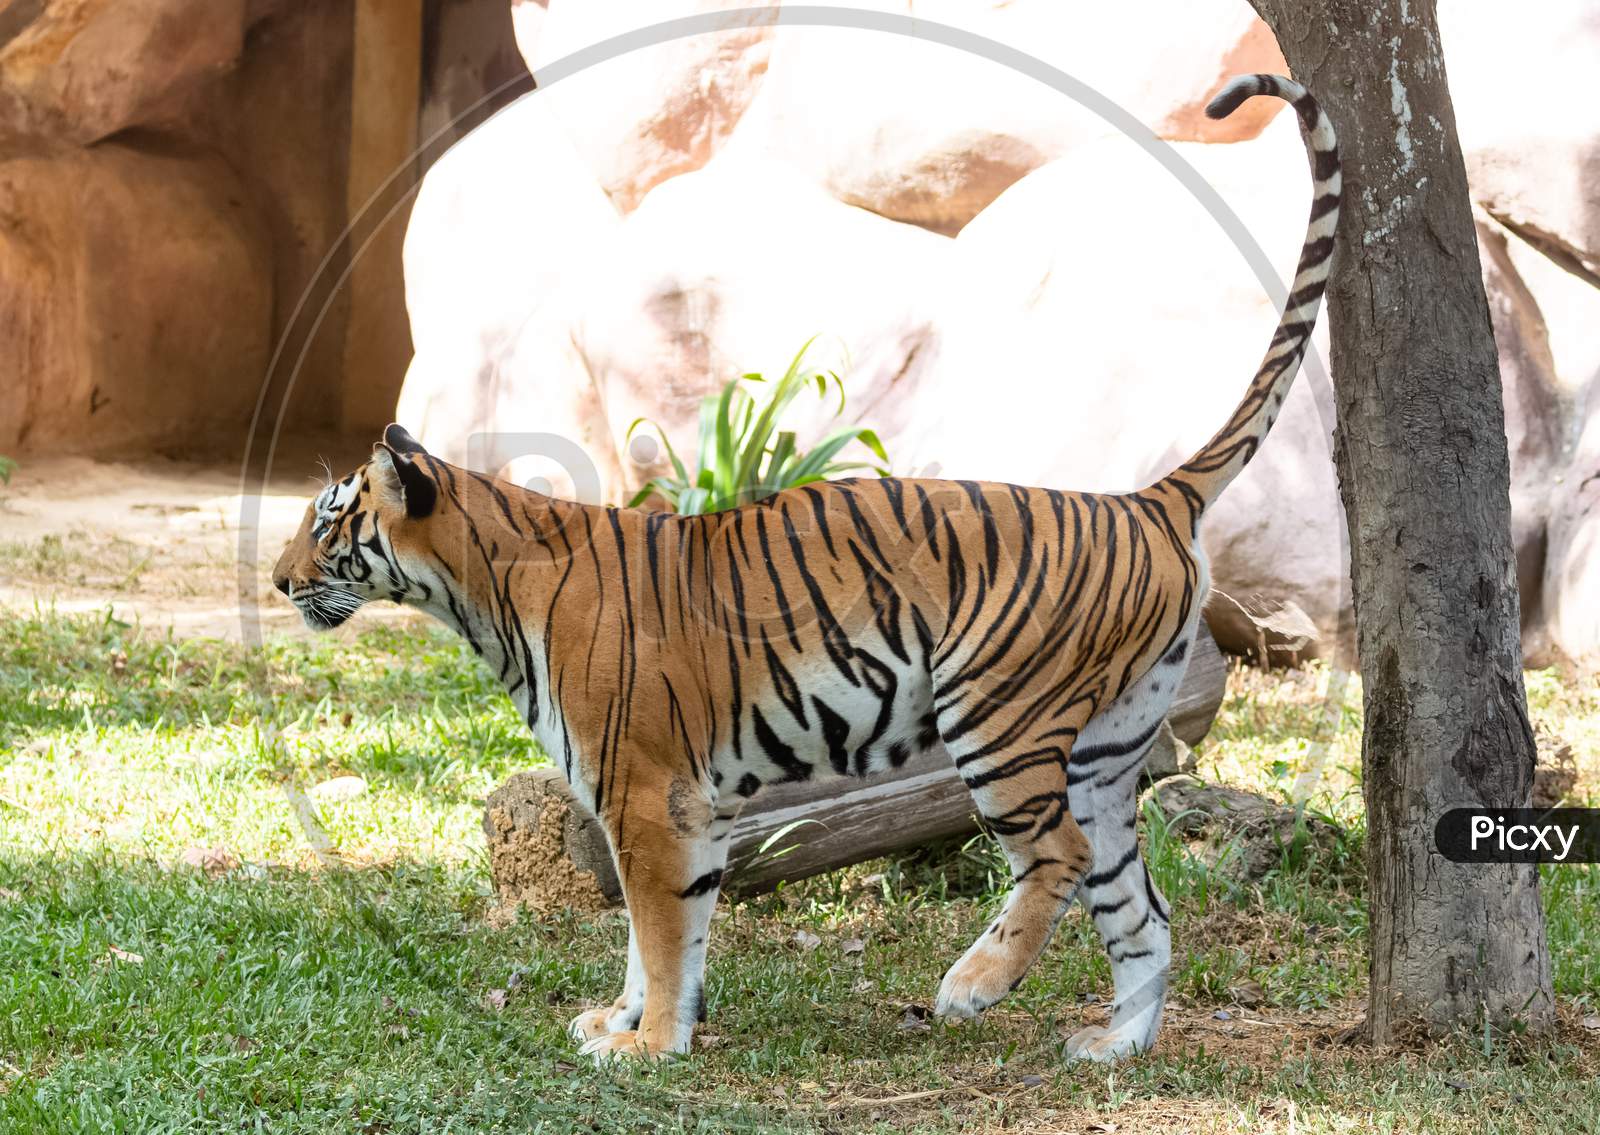 Royal Bengal Tiger in Natural habitat